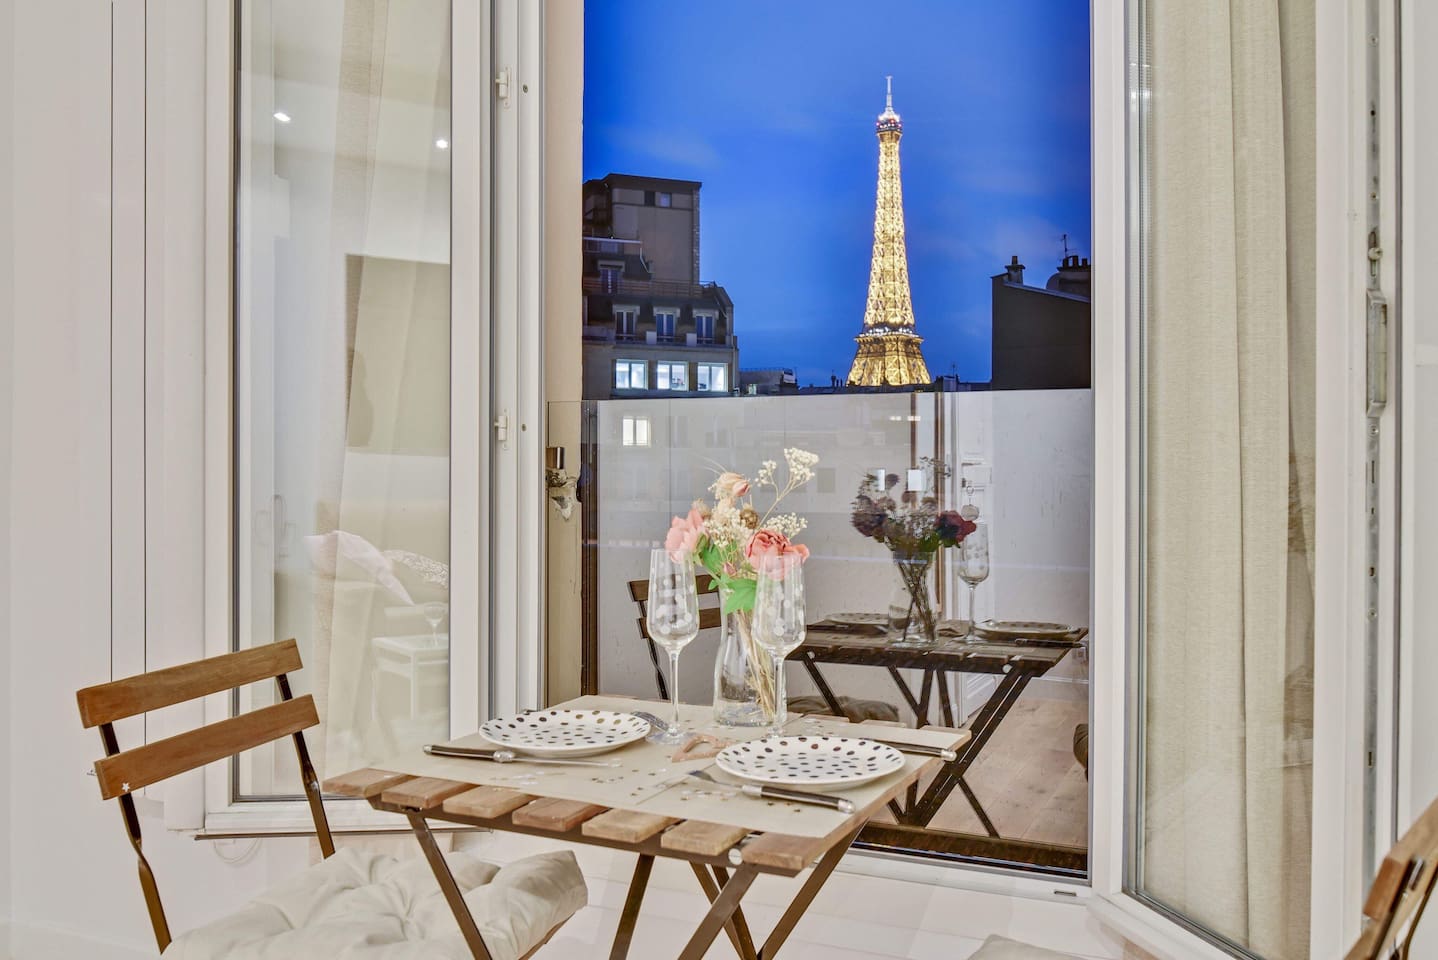 16 Best Airbnbs in Paris | Eiffel Tower Views, Champs-Élysées & More!